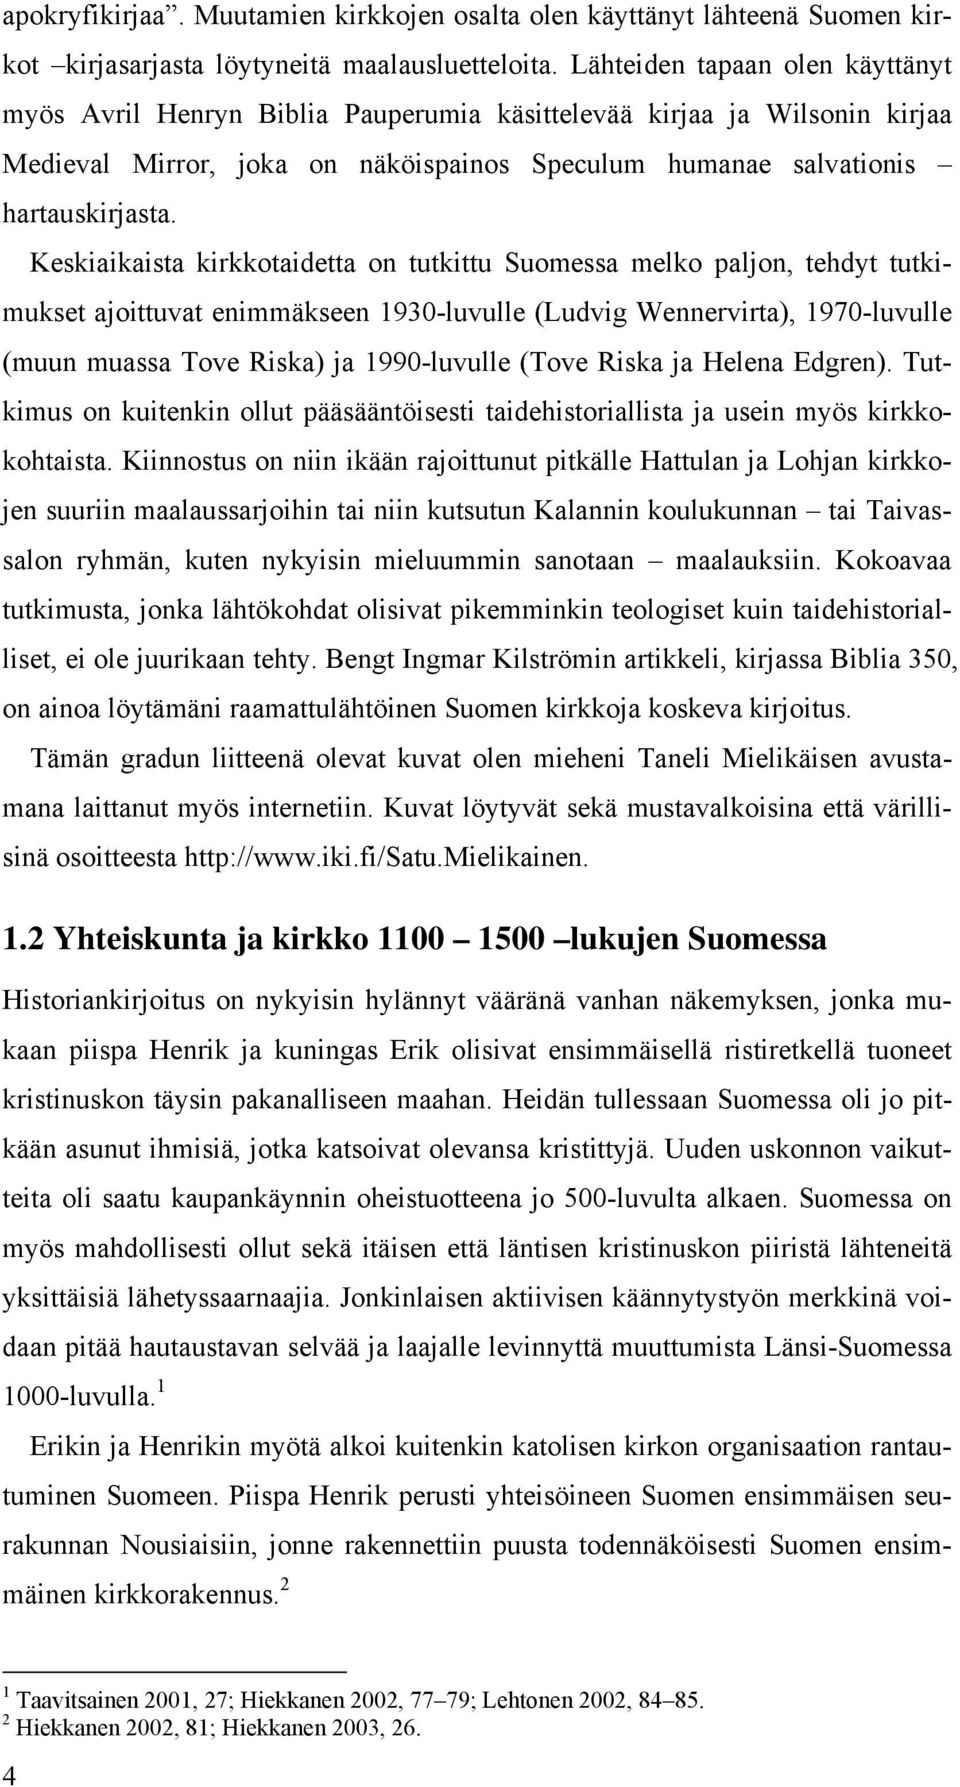 Keskiaikaista kirkkotaidetta on tutkittu Suomessa melko paljon, tehdyt tutkimukset ajoittuvat enimmäkseen 1930-luvulle (Ludvig Wennervirta), 1970-luvulle (muun muassa Tove Riska) ja 1990-luvulle